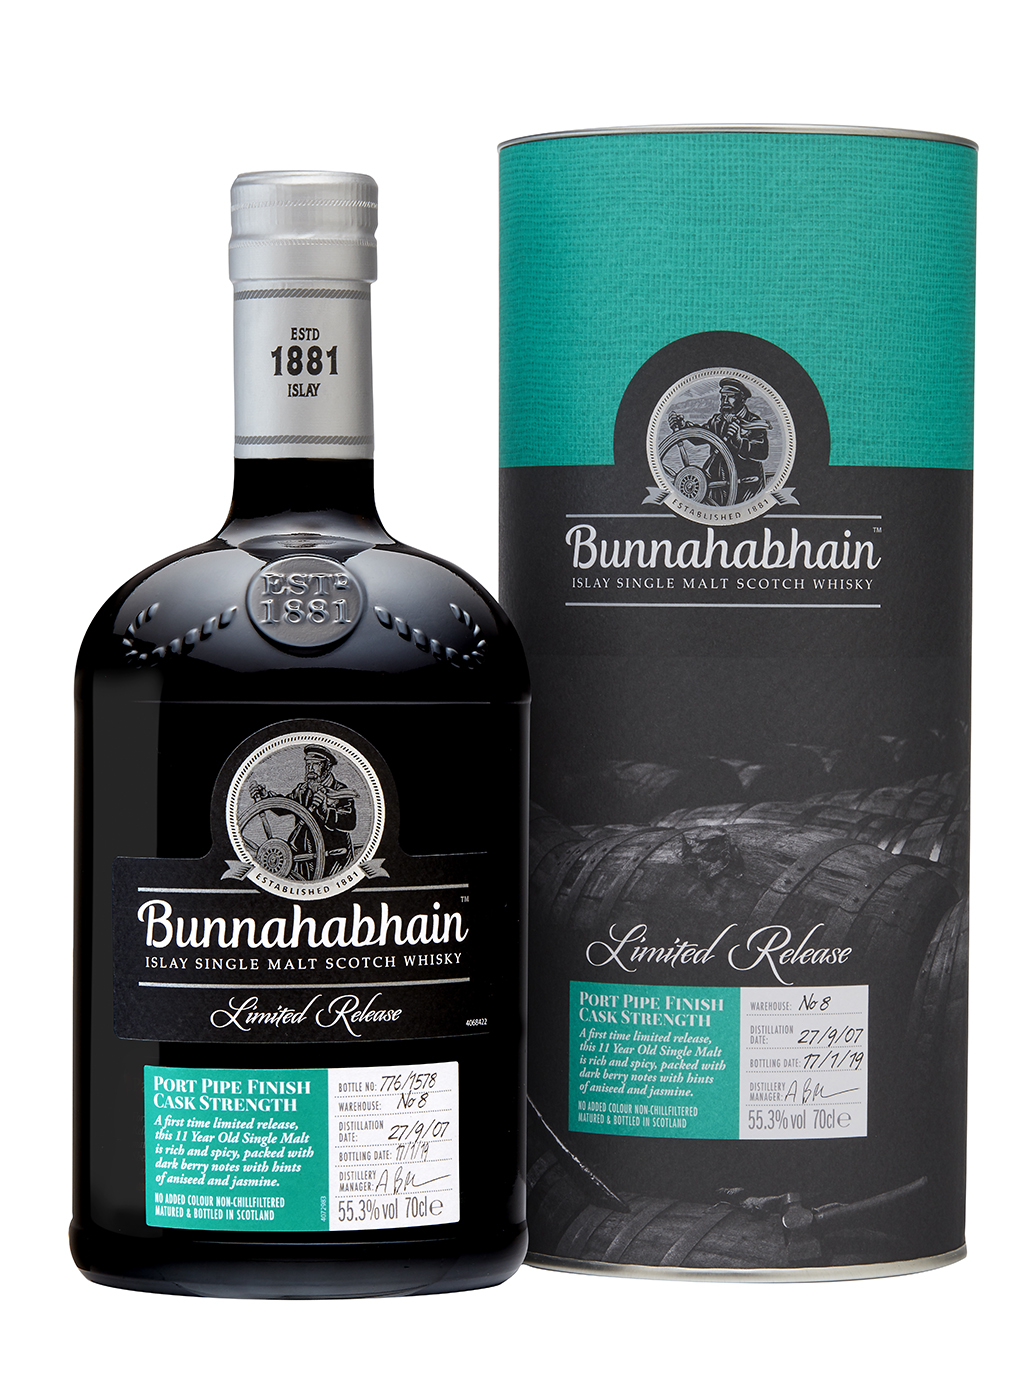 Bunnahabhain (2007) Port Finish: £90 RRP